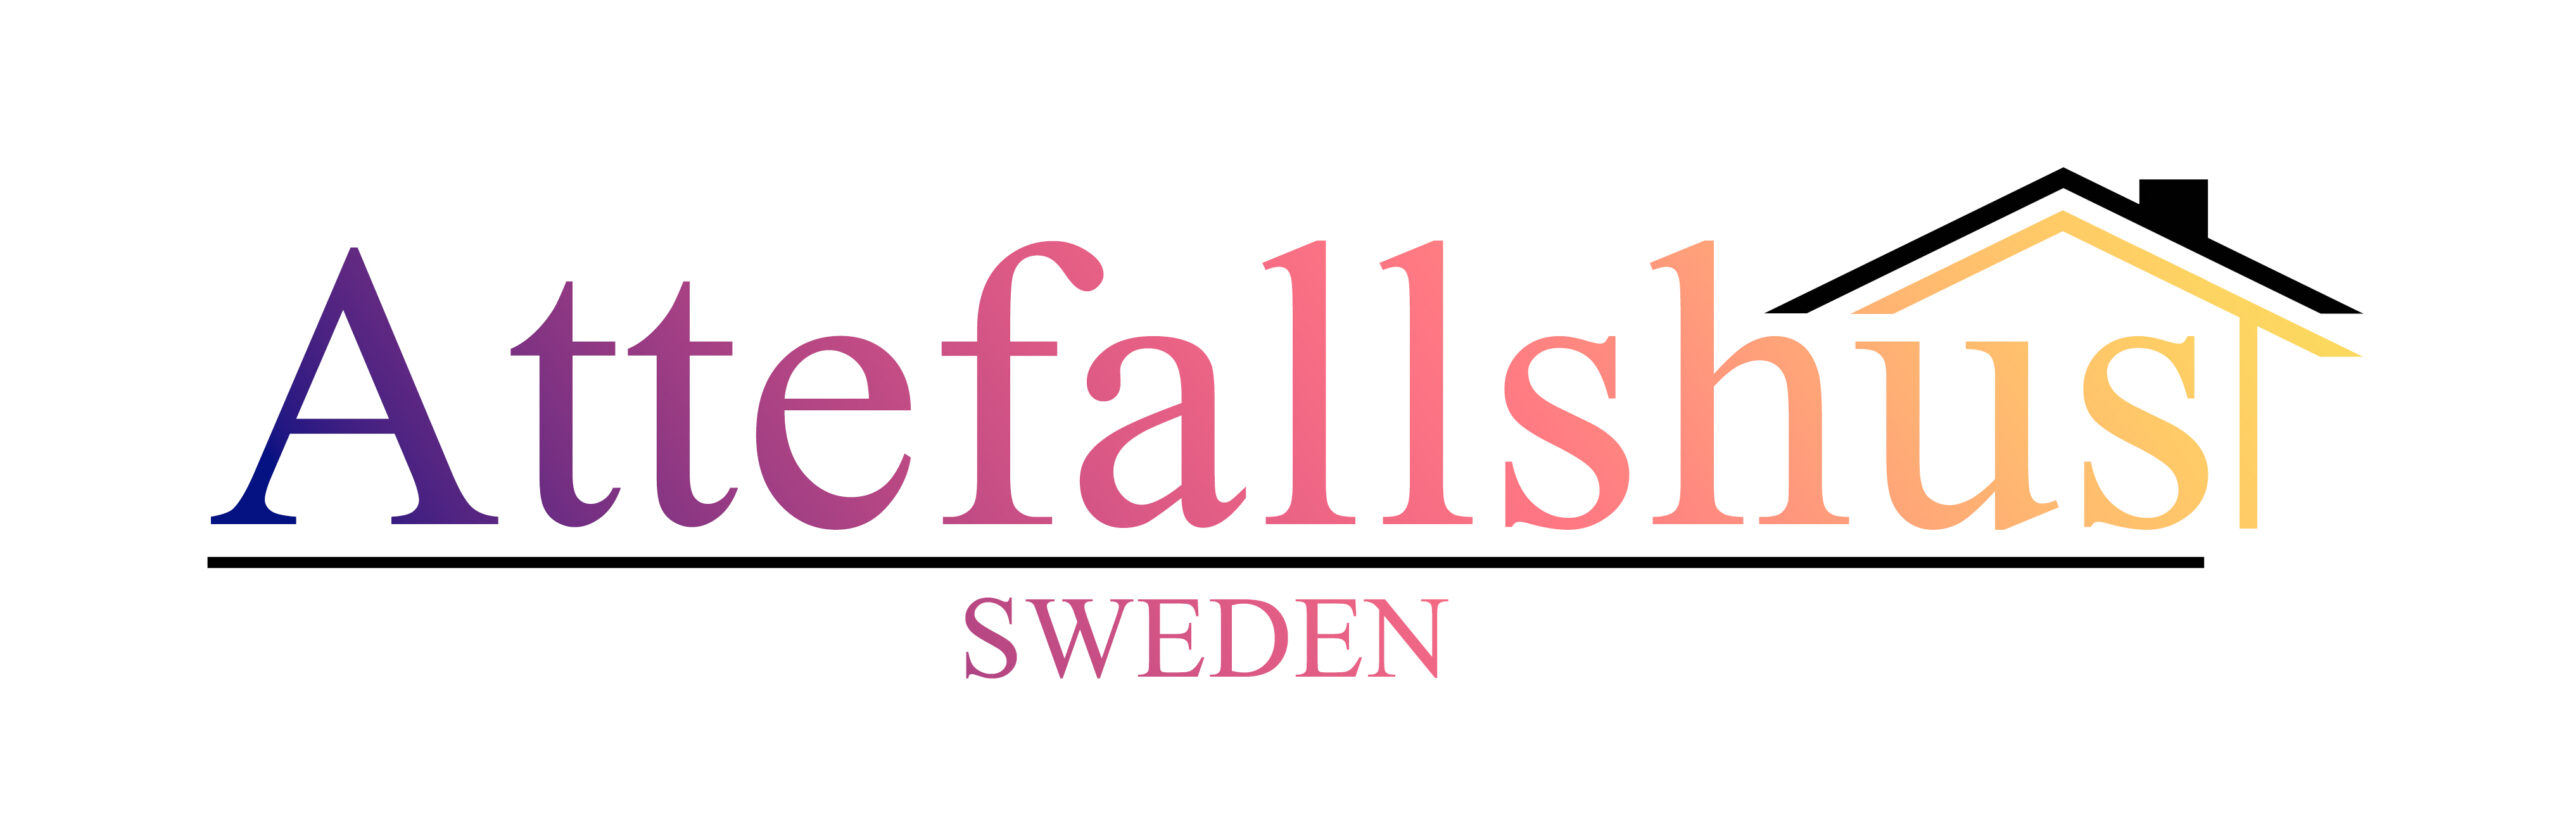 Attefallshus.org Sweden